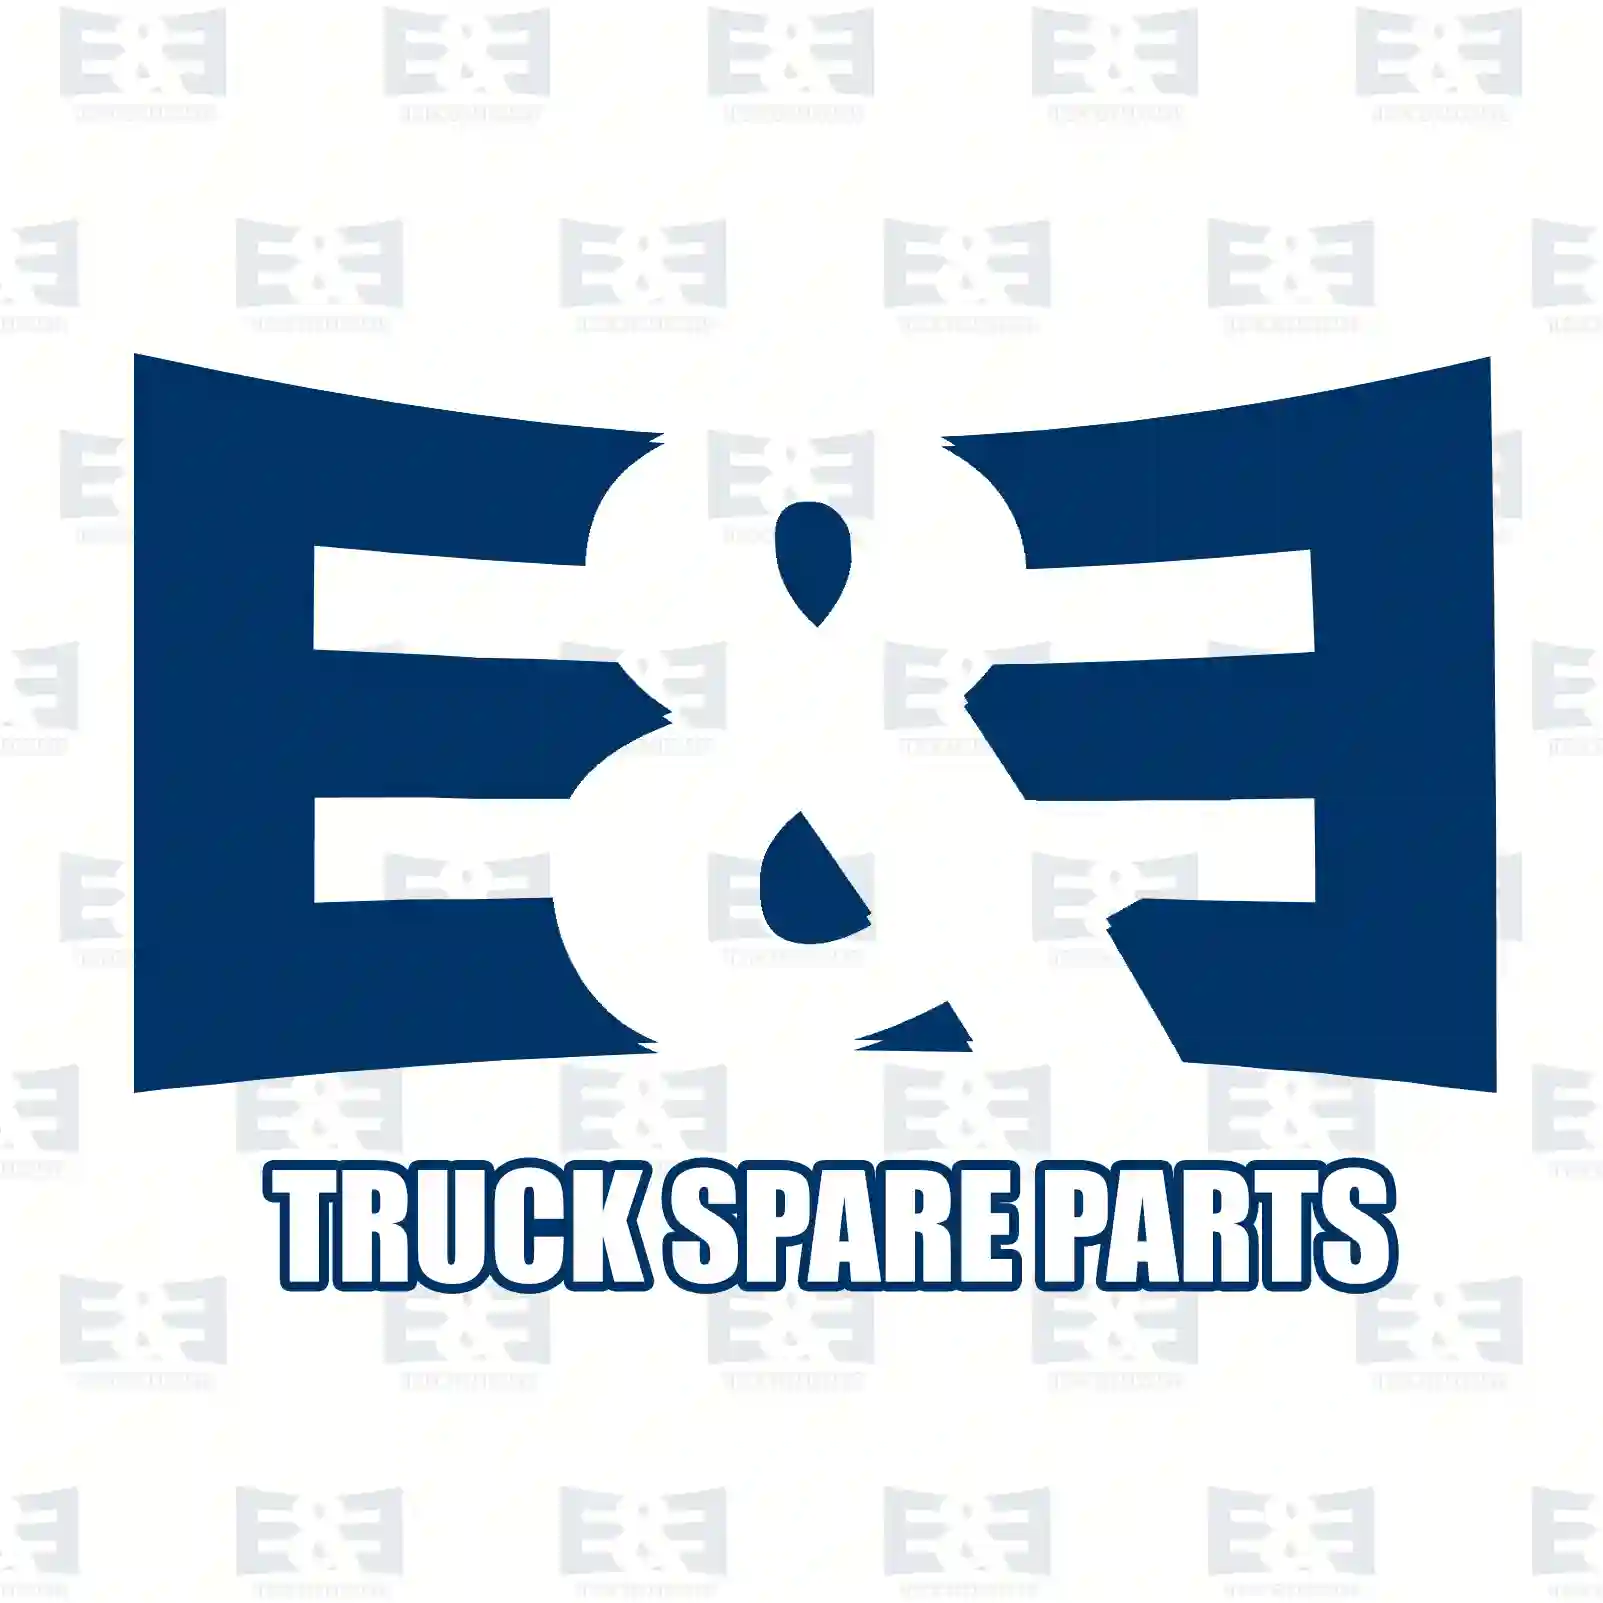 Air mass sensor, 2E2204800, 93856812, 4416861, 8200280060 ||  2E2204800 E&E Truck Spare Parts | Truck Spare Parts, Auotomotive Spare Parts Air mass sensor, 2E2204800, 93856812, 4416861, 8200280060 ||  2E2204800 E&E Truck Spare Parts | Truck Spare Parts, Auotomotive Spare Parts